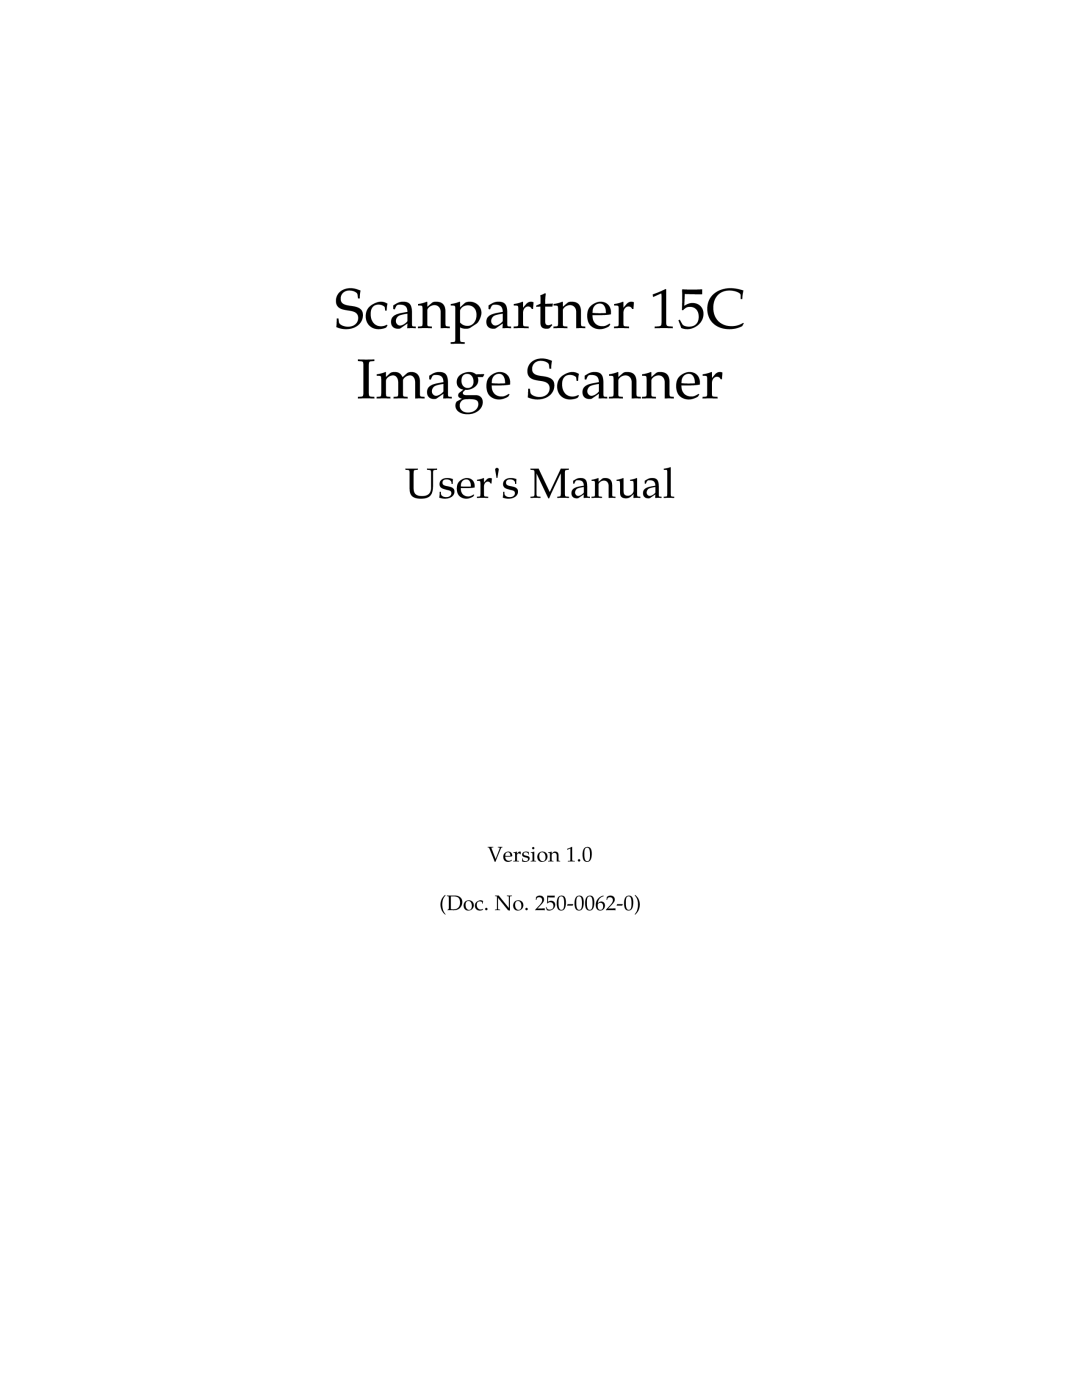 Fujitsu user manual Scanpartner 15C, Image Scanner 